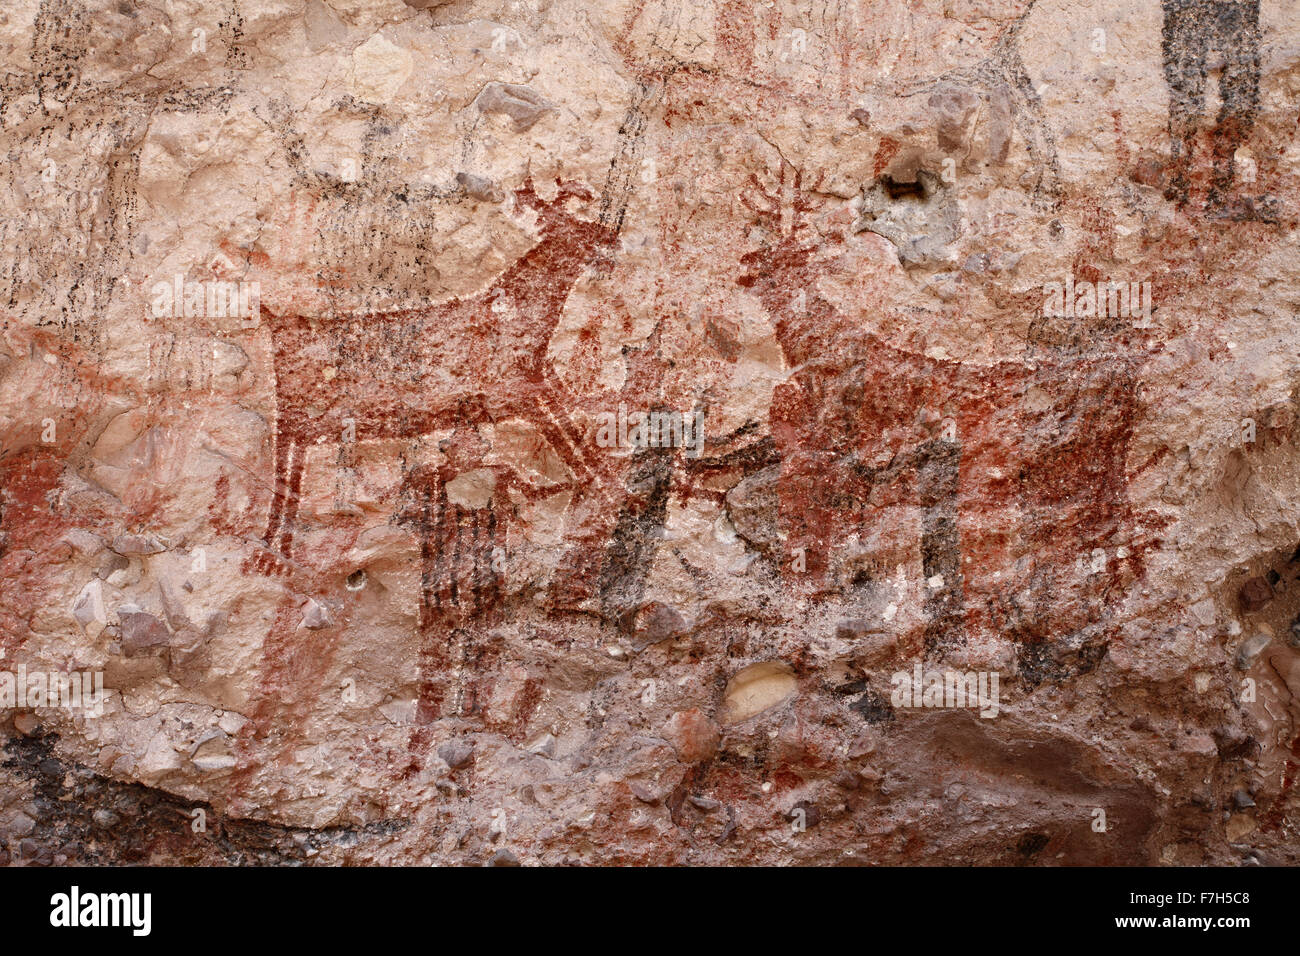 Pr7164-D. Pétroglyphes et peintures rupestres de Santa Marta, qui montrent des personnes, d'animaux (chevreuils, lapins, poissons, etc.). Baja, au Mexique. Banque D'Images